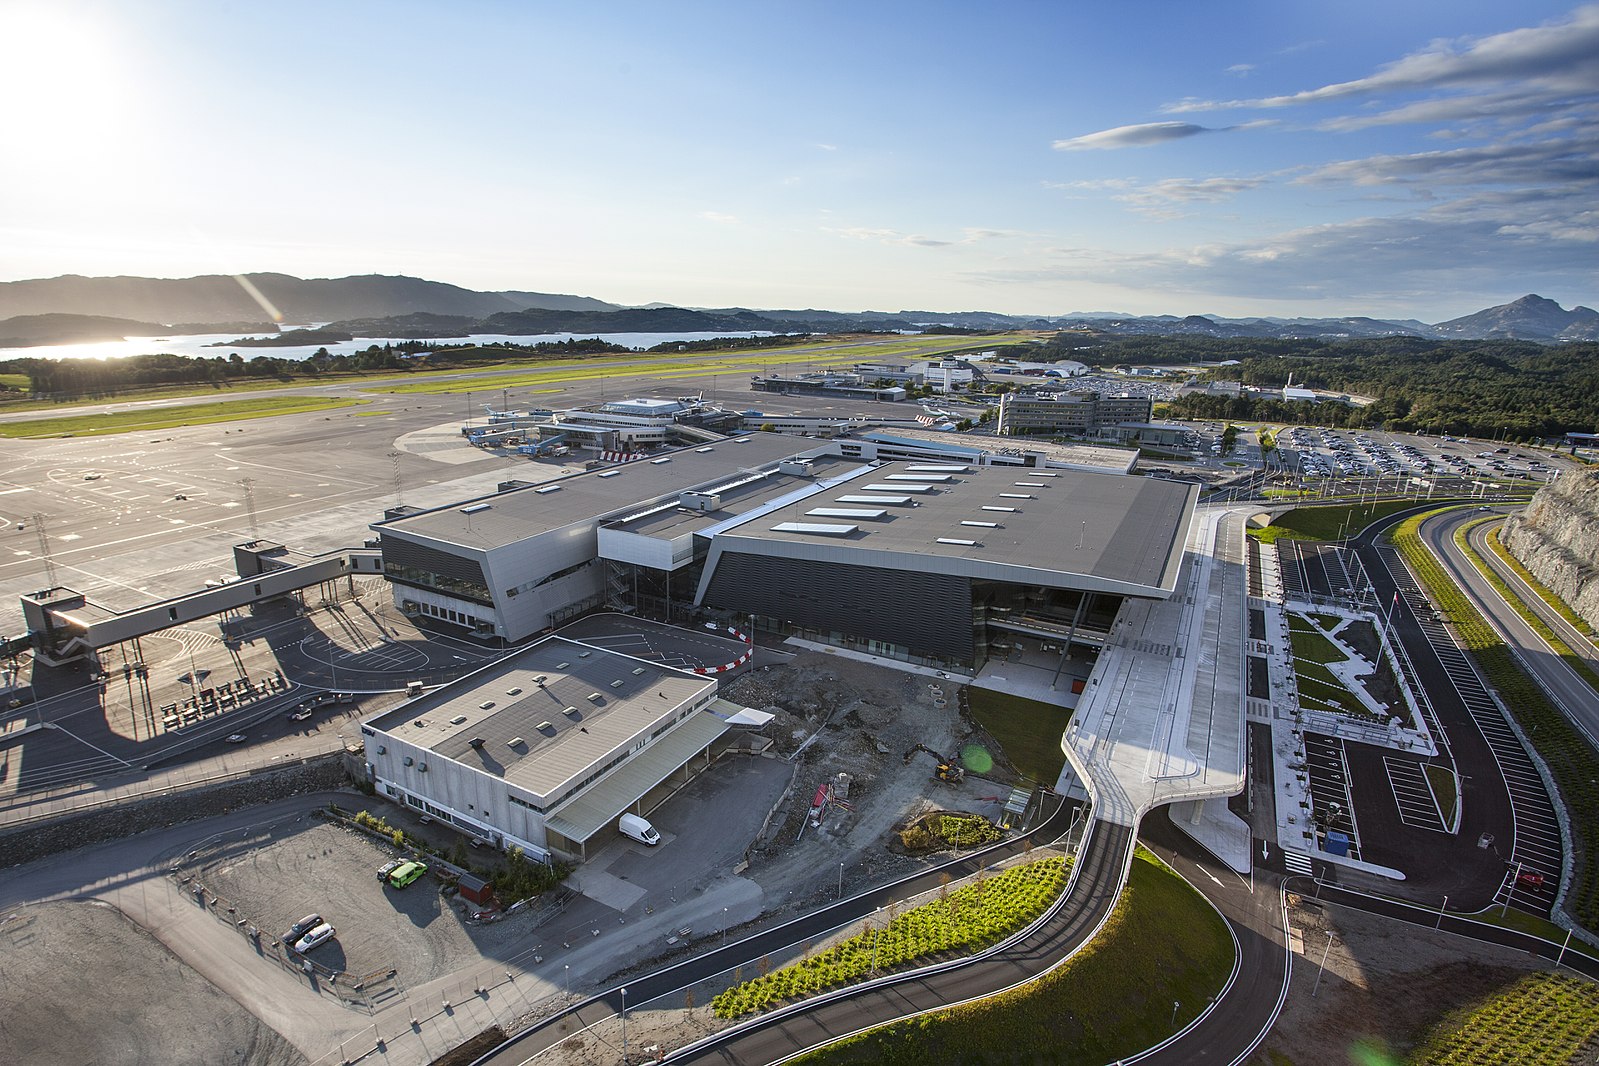 Bergen Airport, Flesland is the main international airport serving Bergen, Norway.